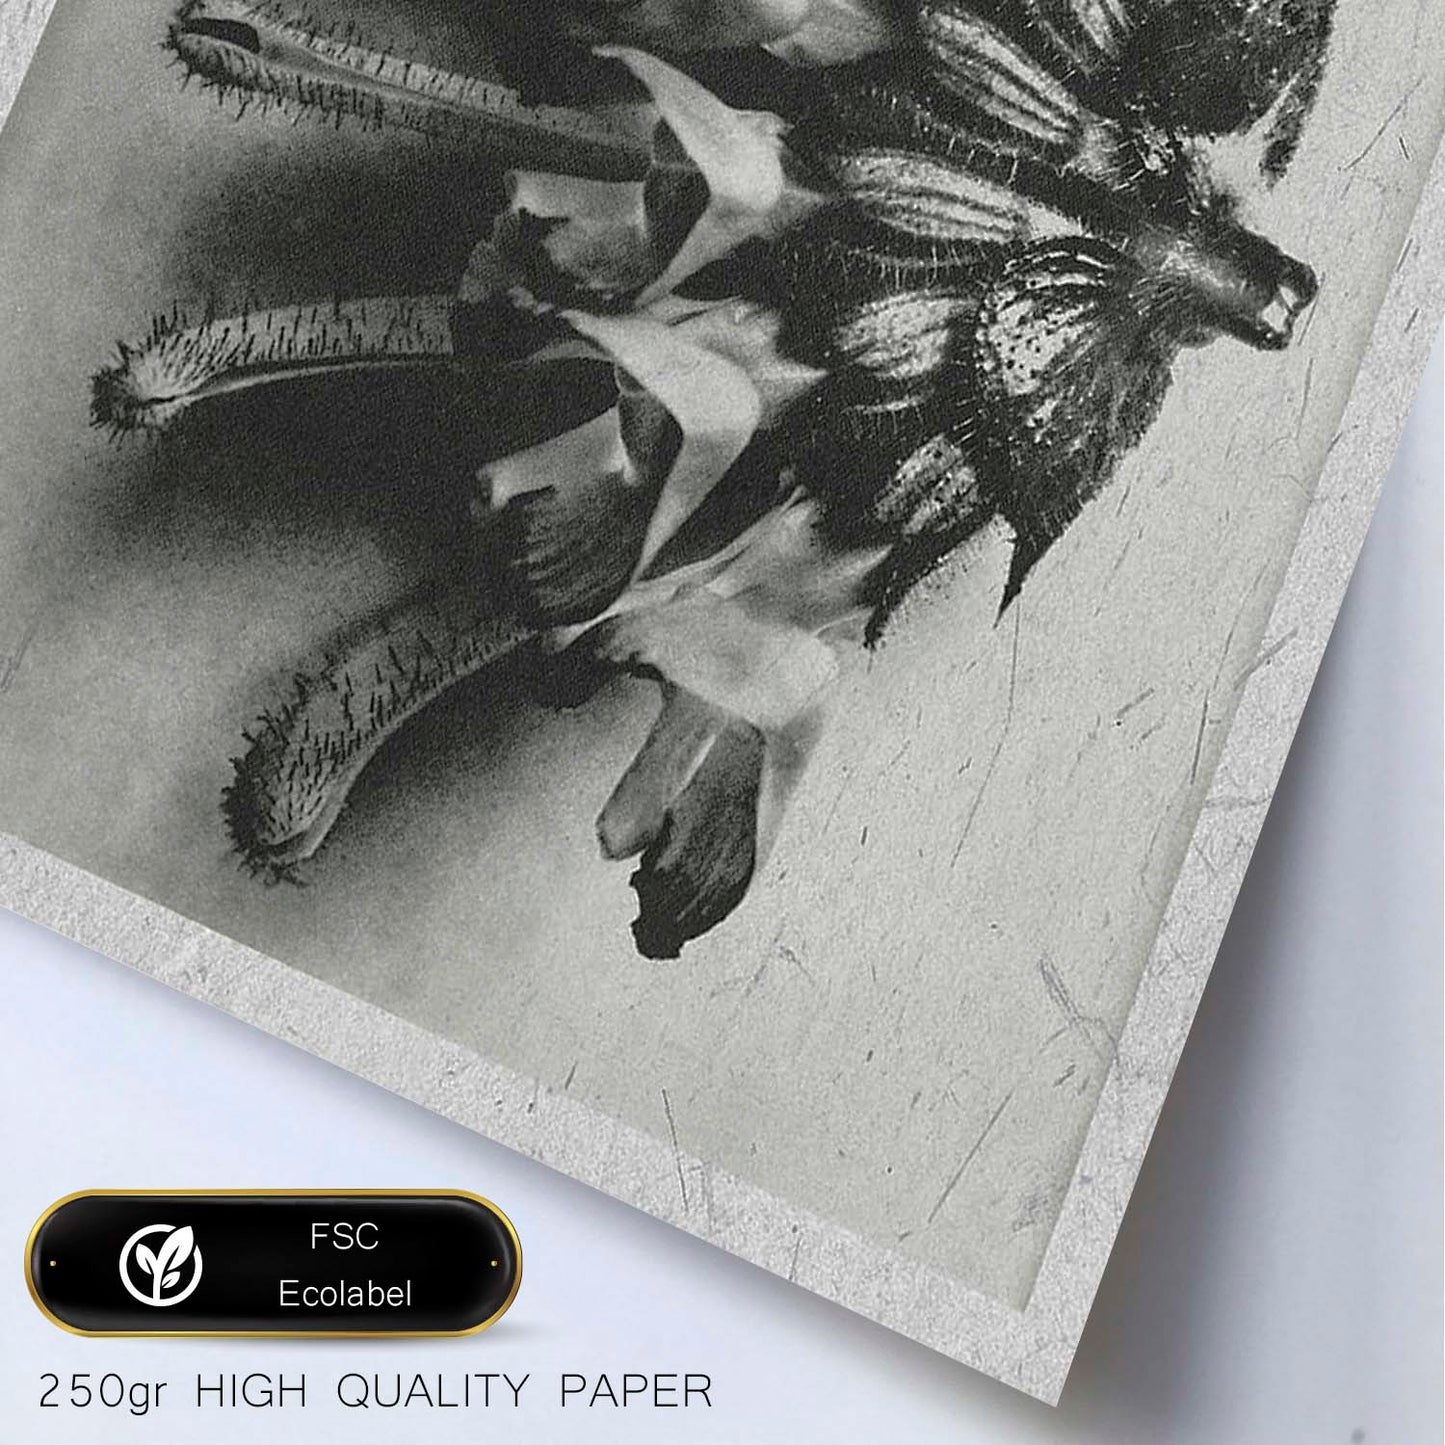 Lámina Planta blanco y negro 27. Pósters con ilustraciones de flores y plantas en tonos grises.-Artwork-Nacnic-Nacnic Estudio SL